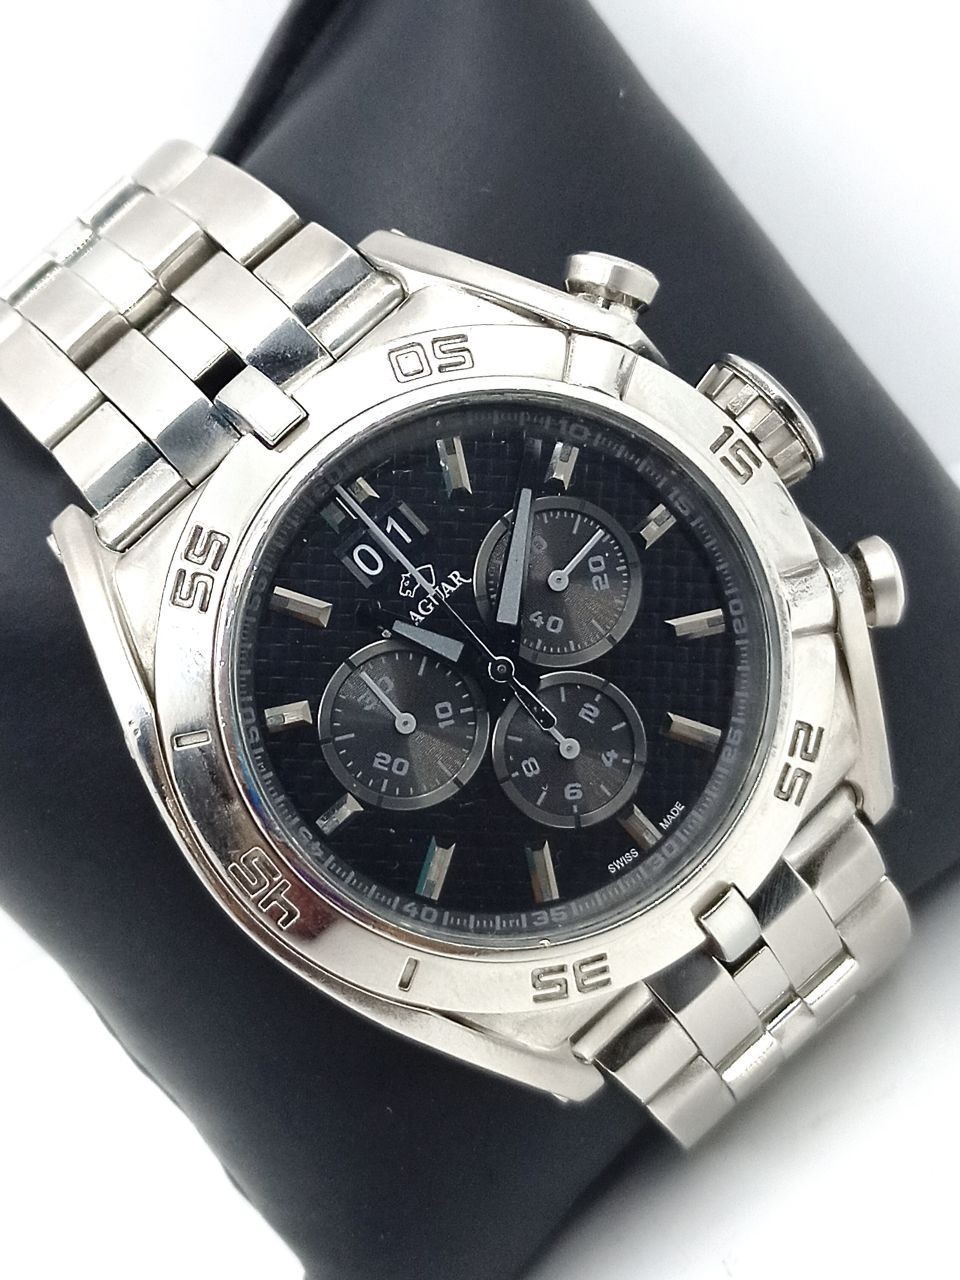 Jaguar Limited Edition watch